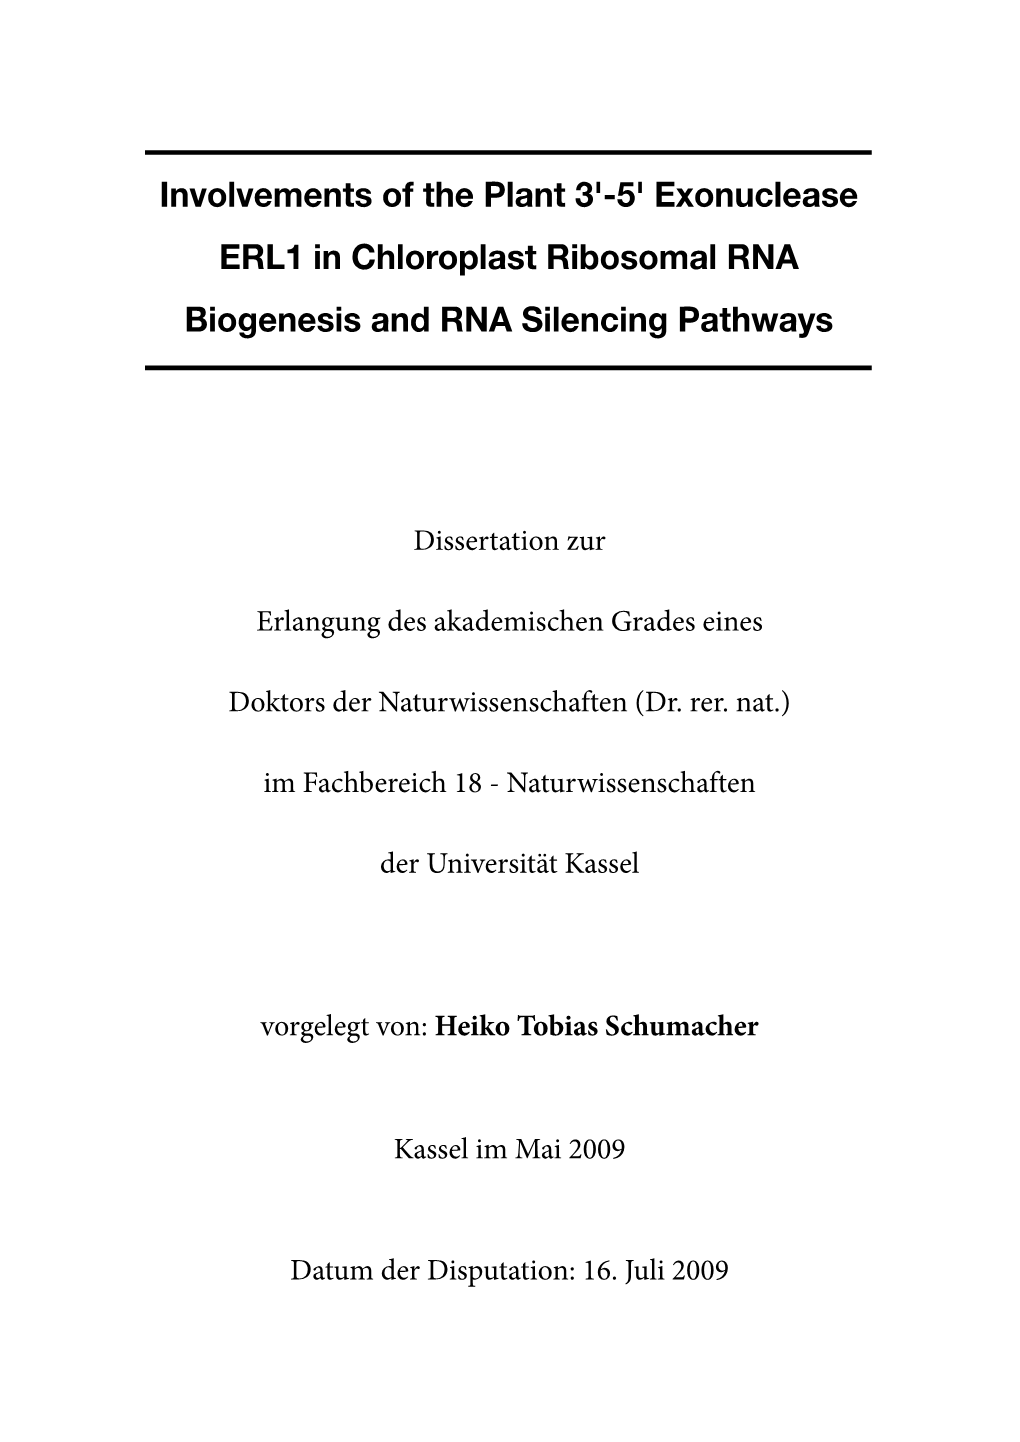 5' Exonuclease ERL1 in Chloroplast Ribosomal RNA